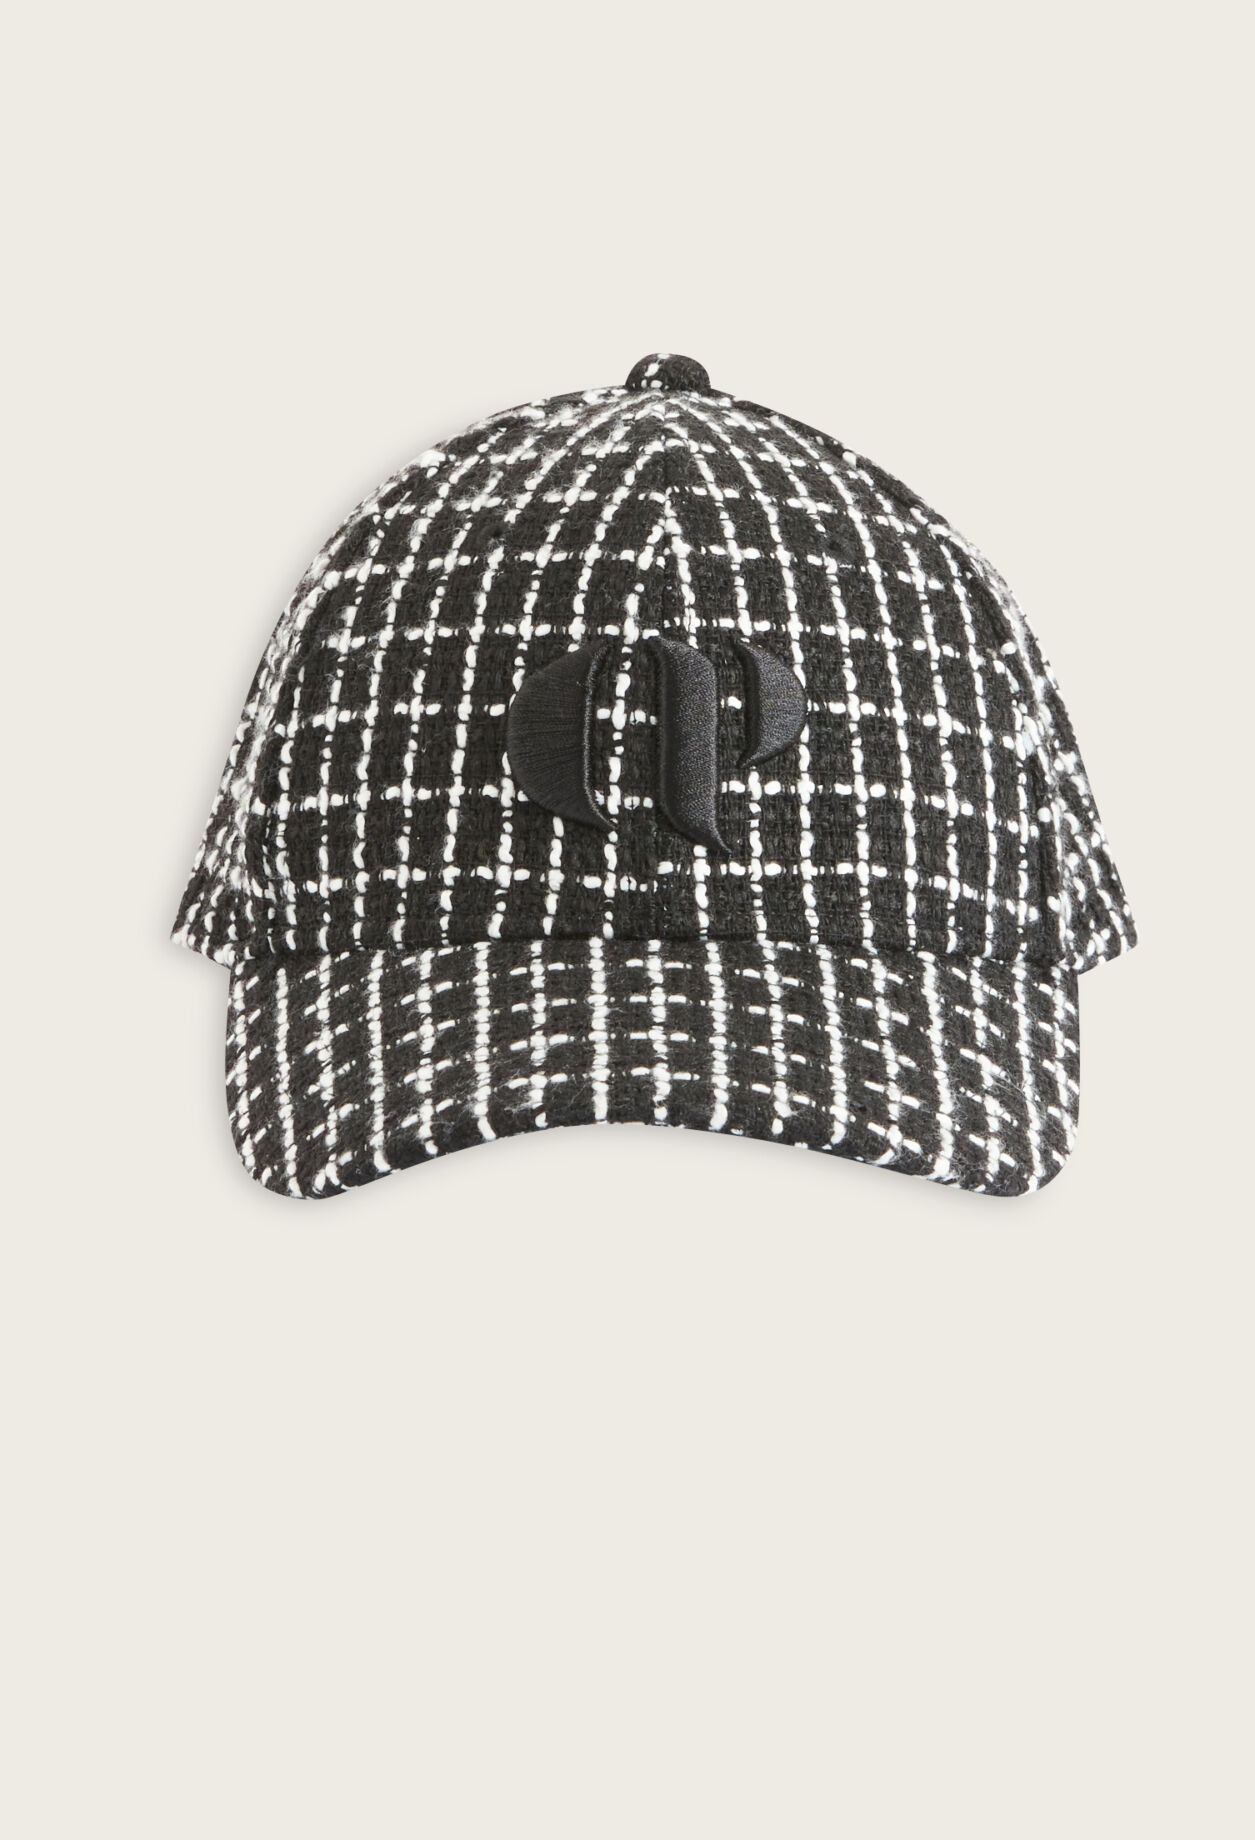 Black tweed cap